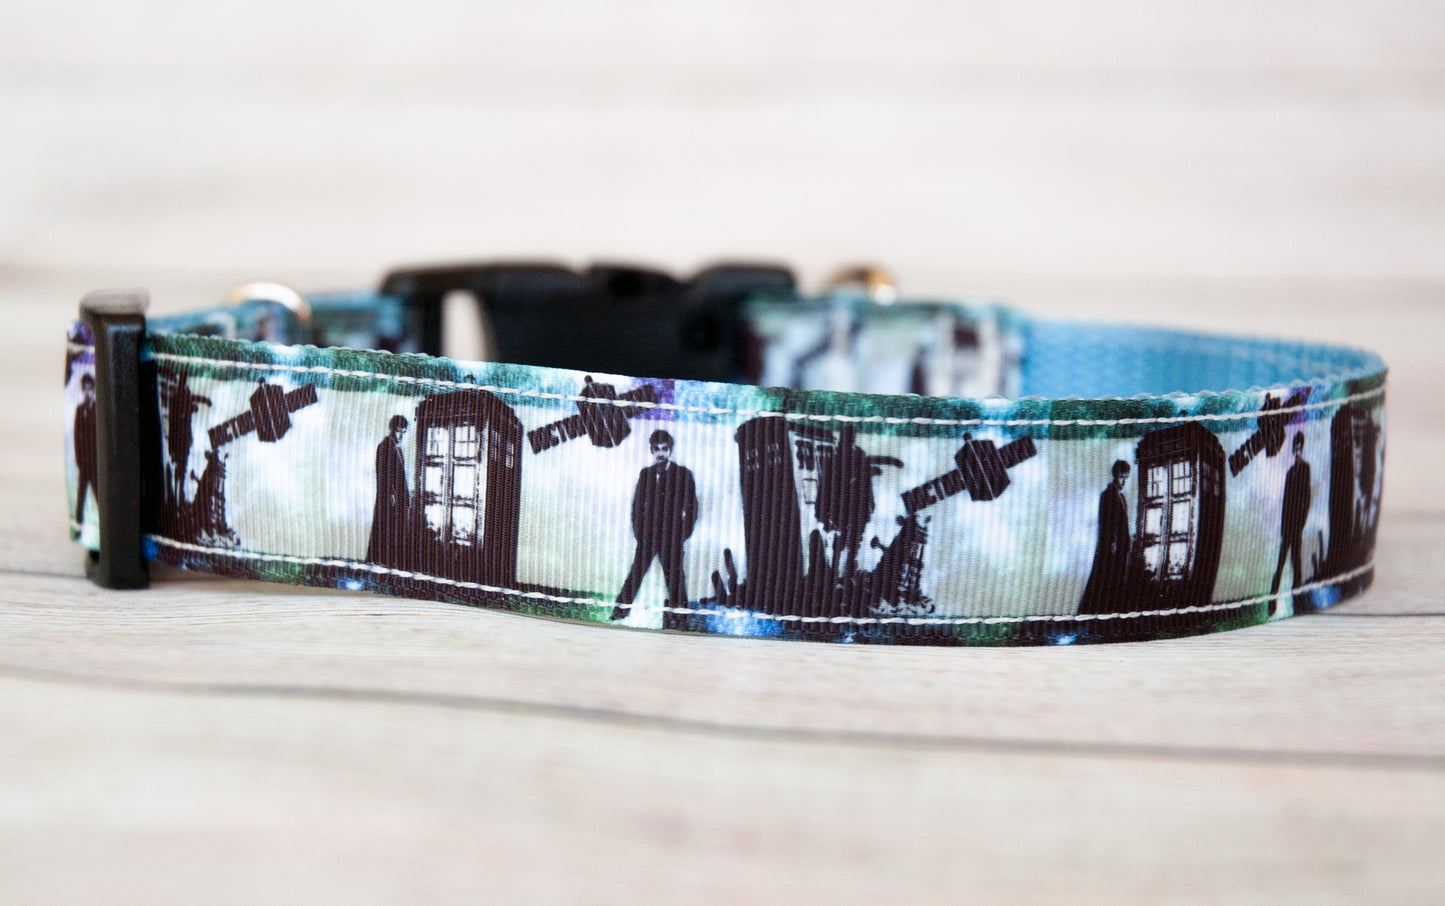 Doctor Who dog collar, Tardis dog collar and/or leash, 1" wide